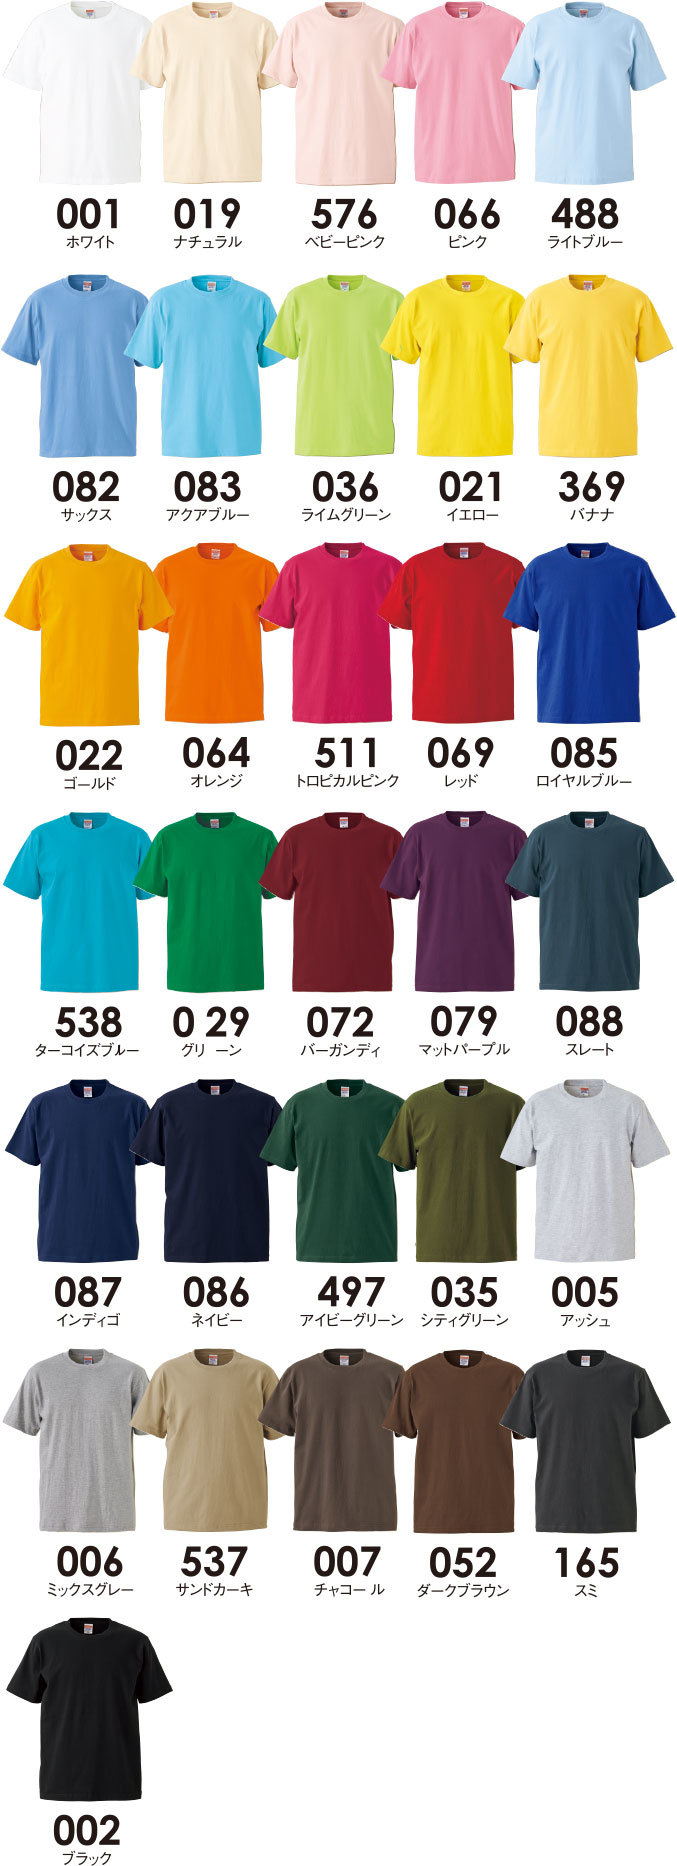 プレミアムTシャツ 5932-01 カラーラインナップ 